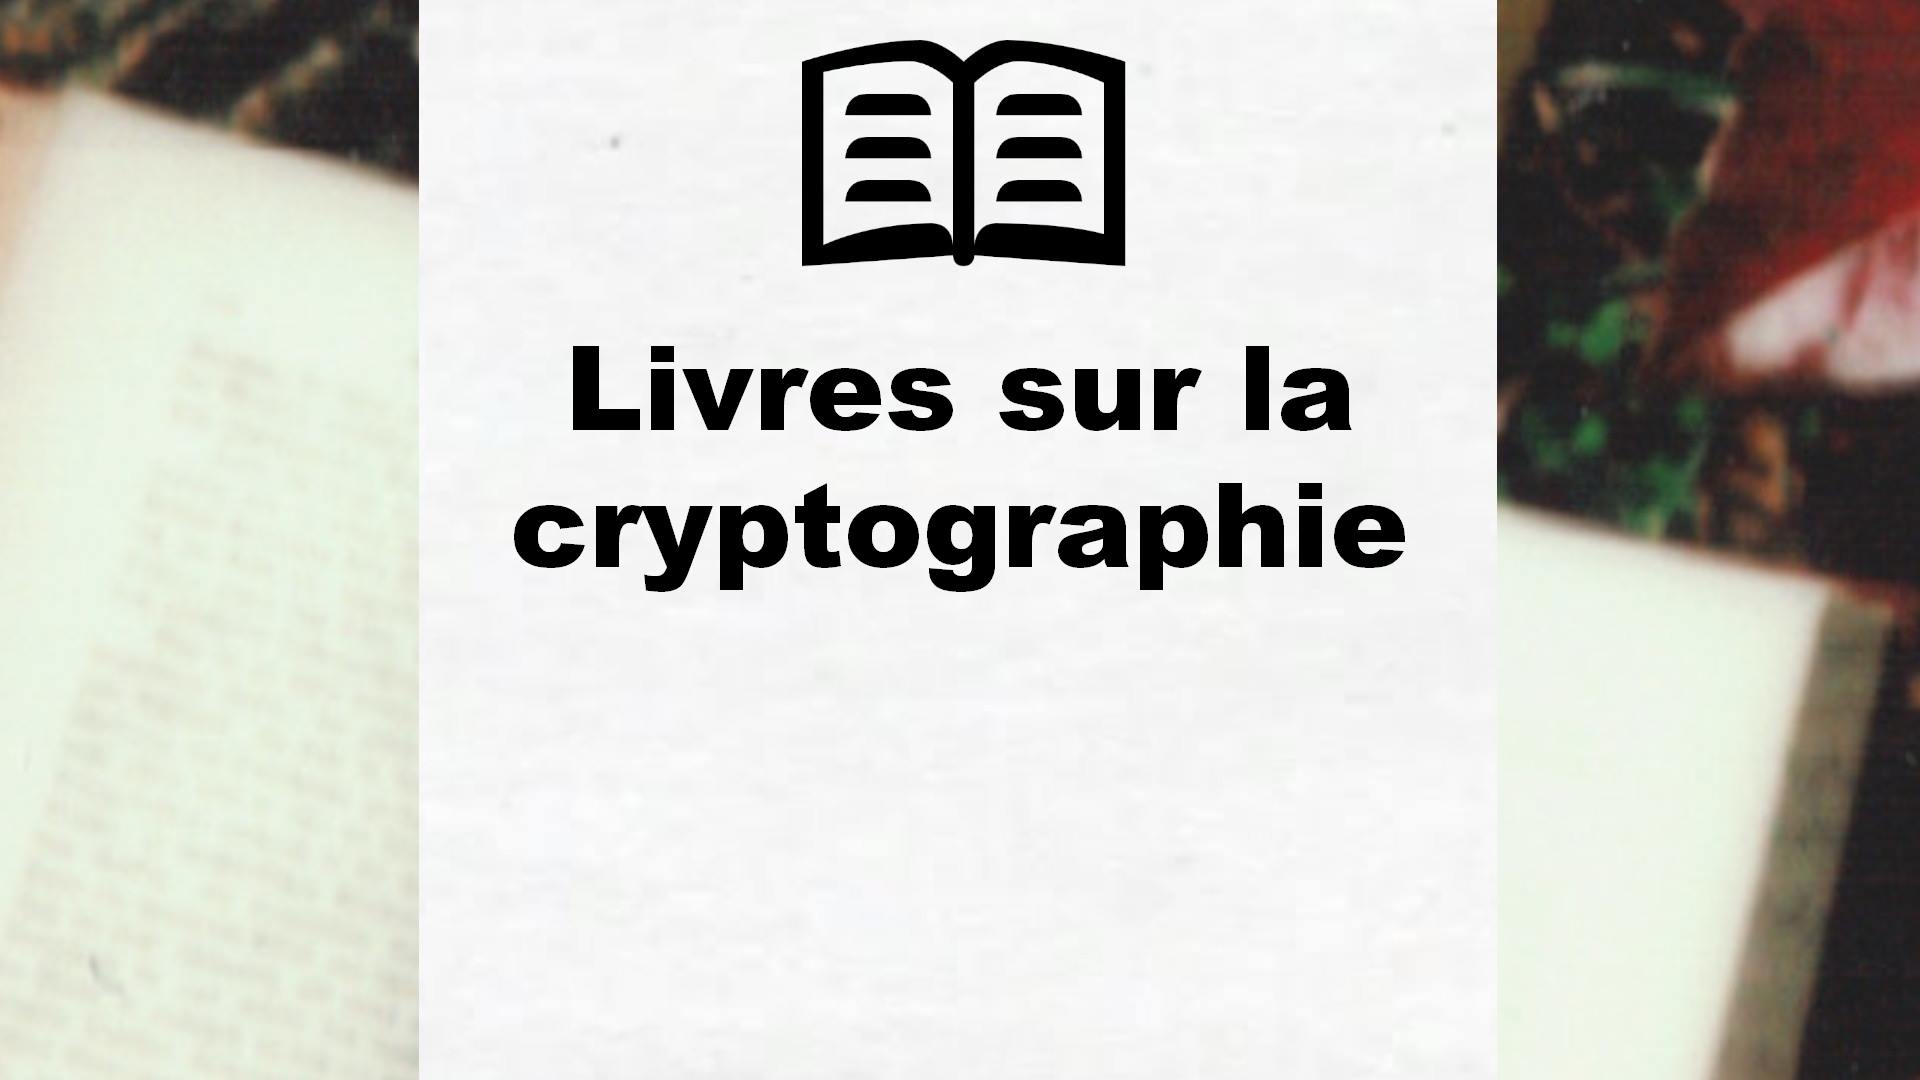 Livres sur la cryptographie